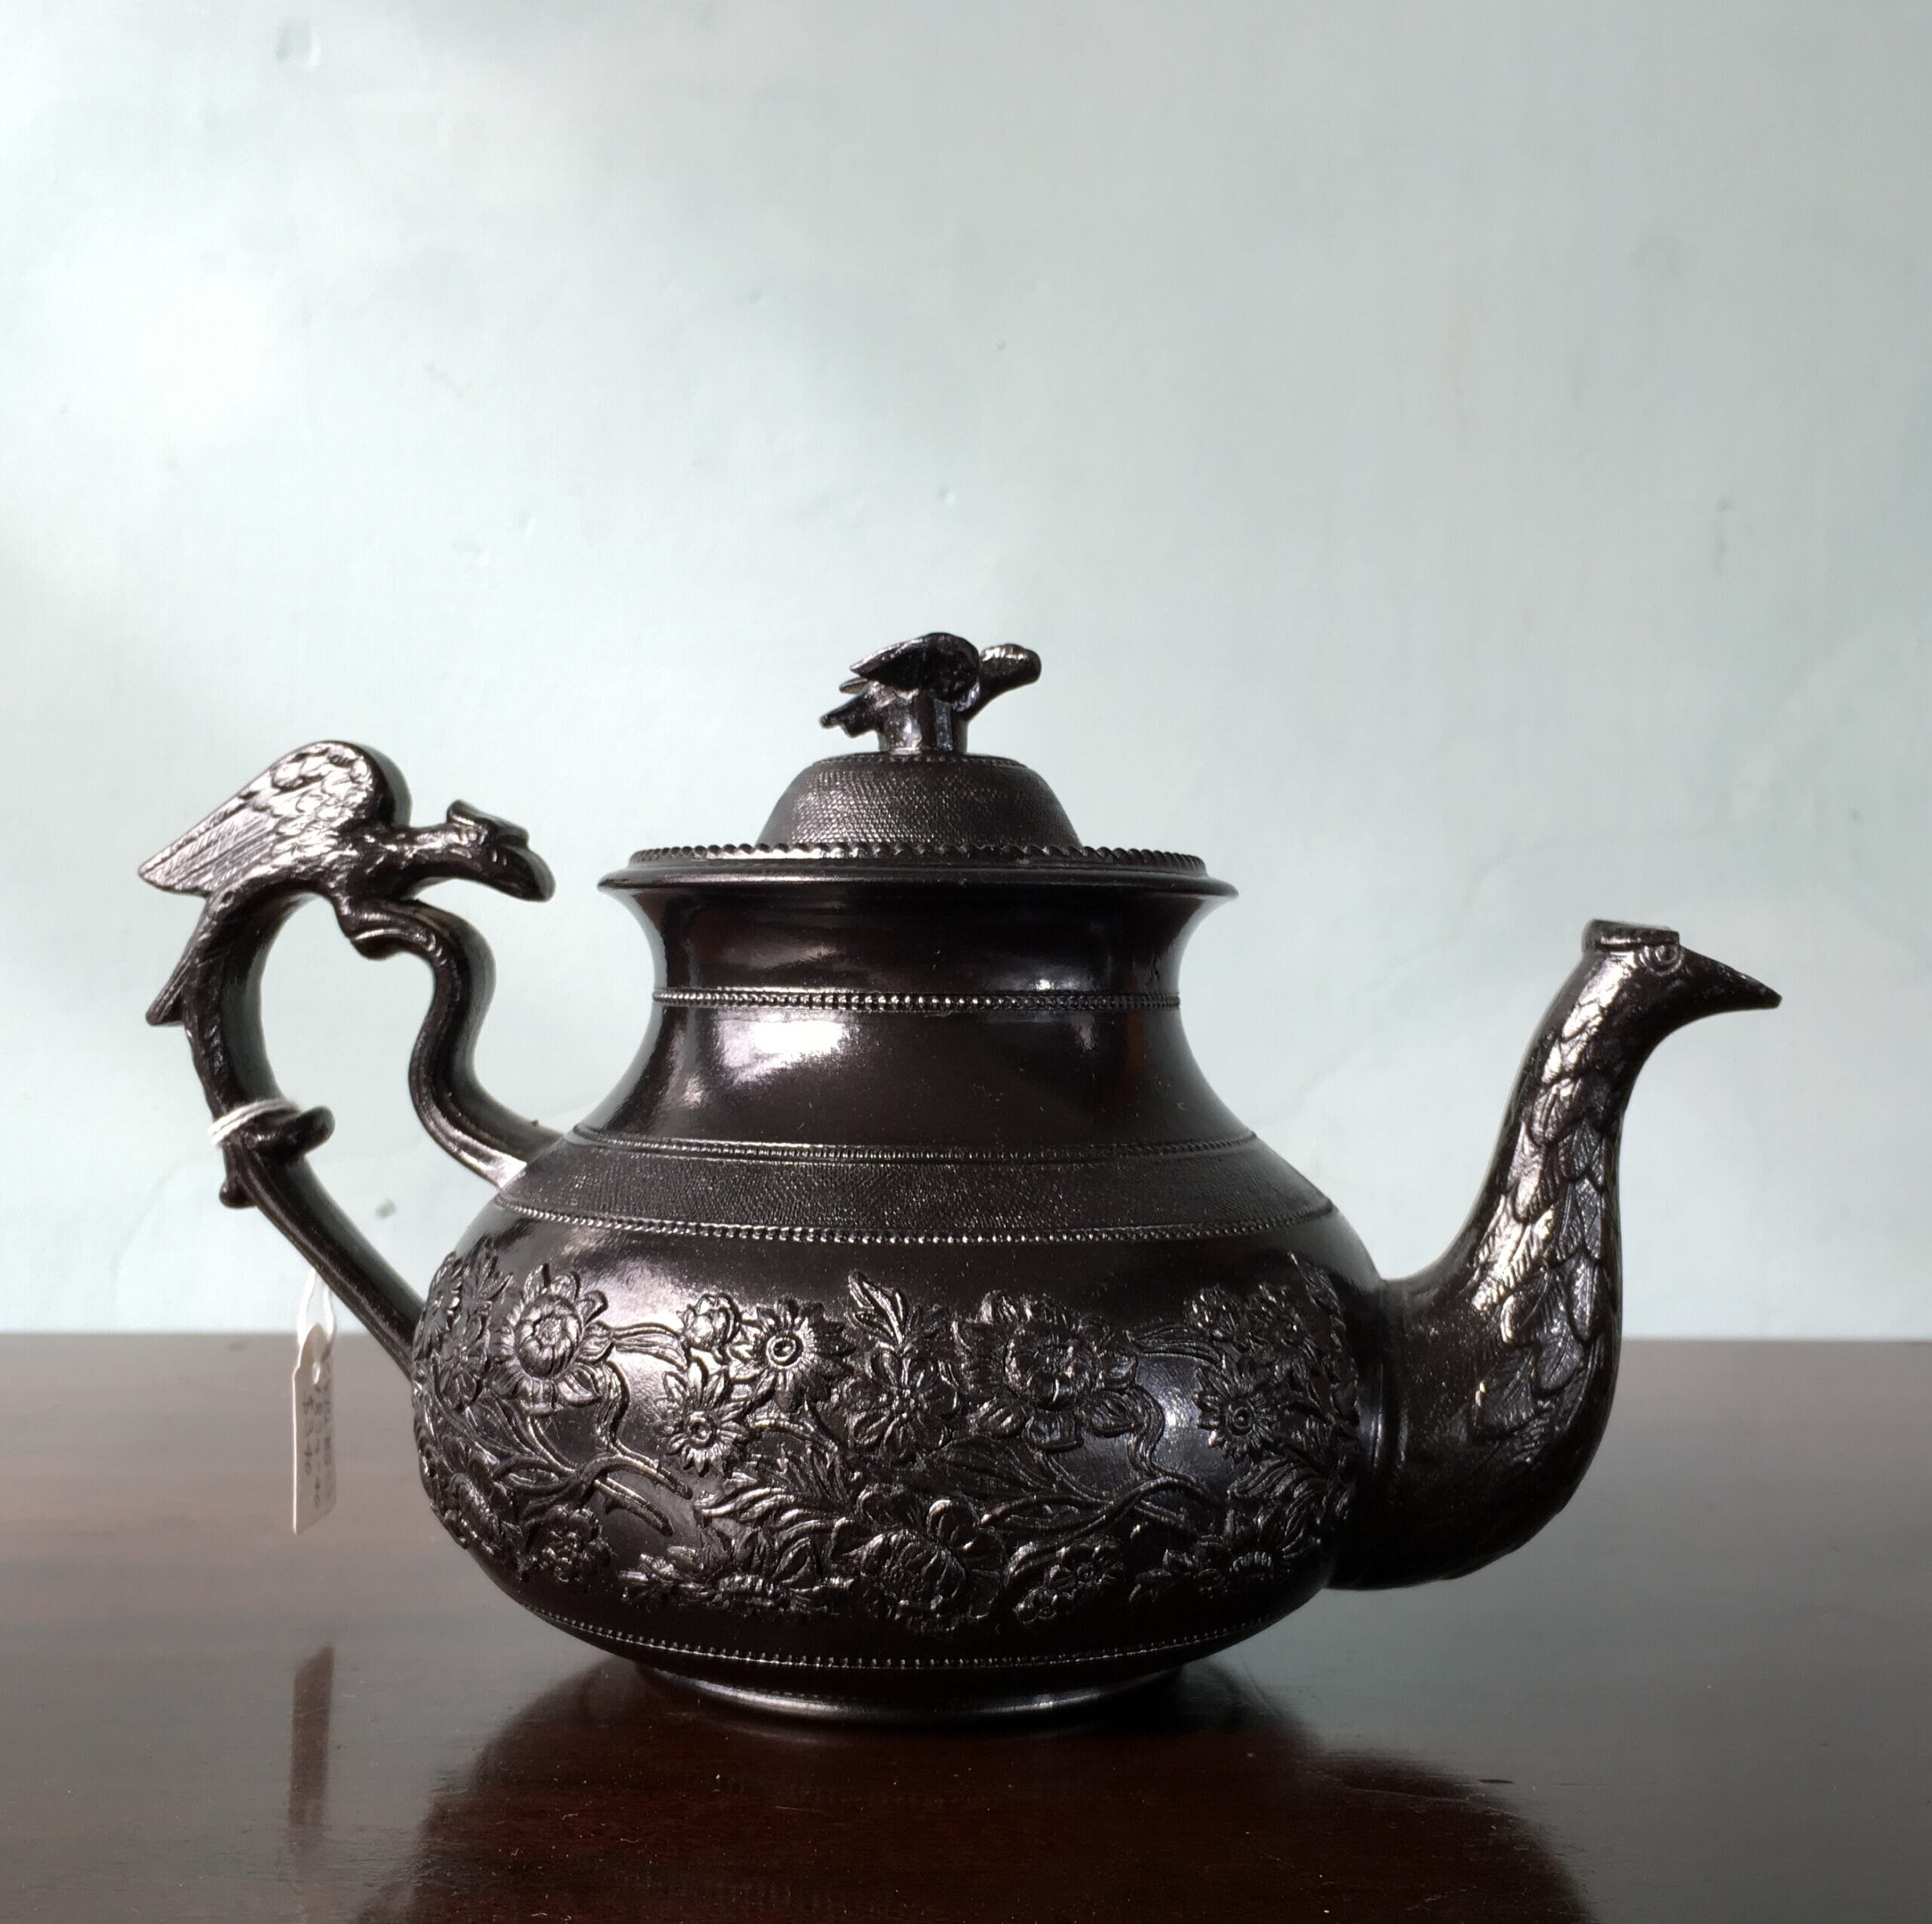 Cyples 'Egyptian Black' teapot, birds head spout & bird handle, 1834-40-0